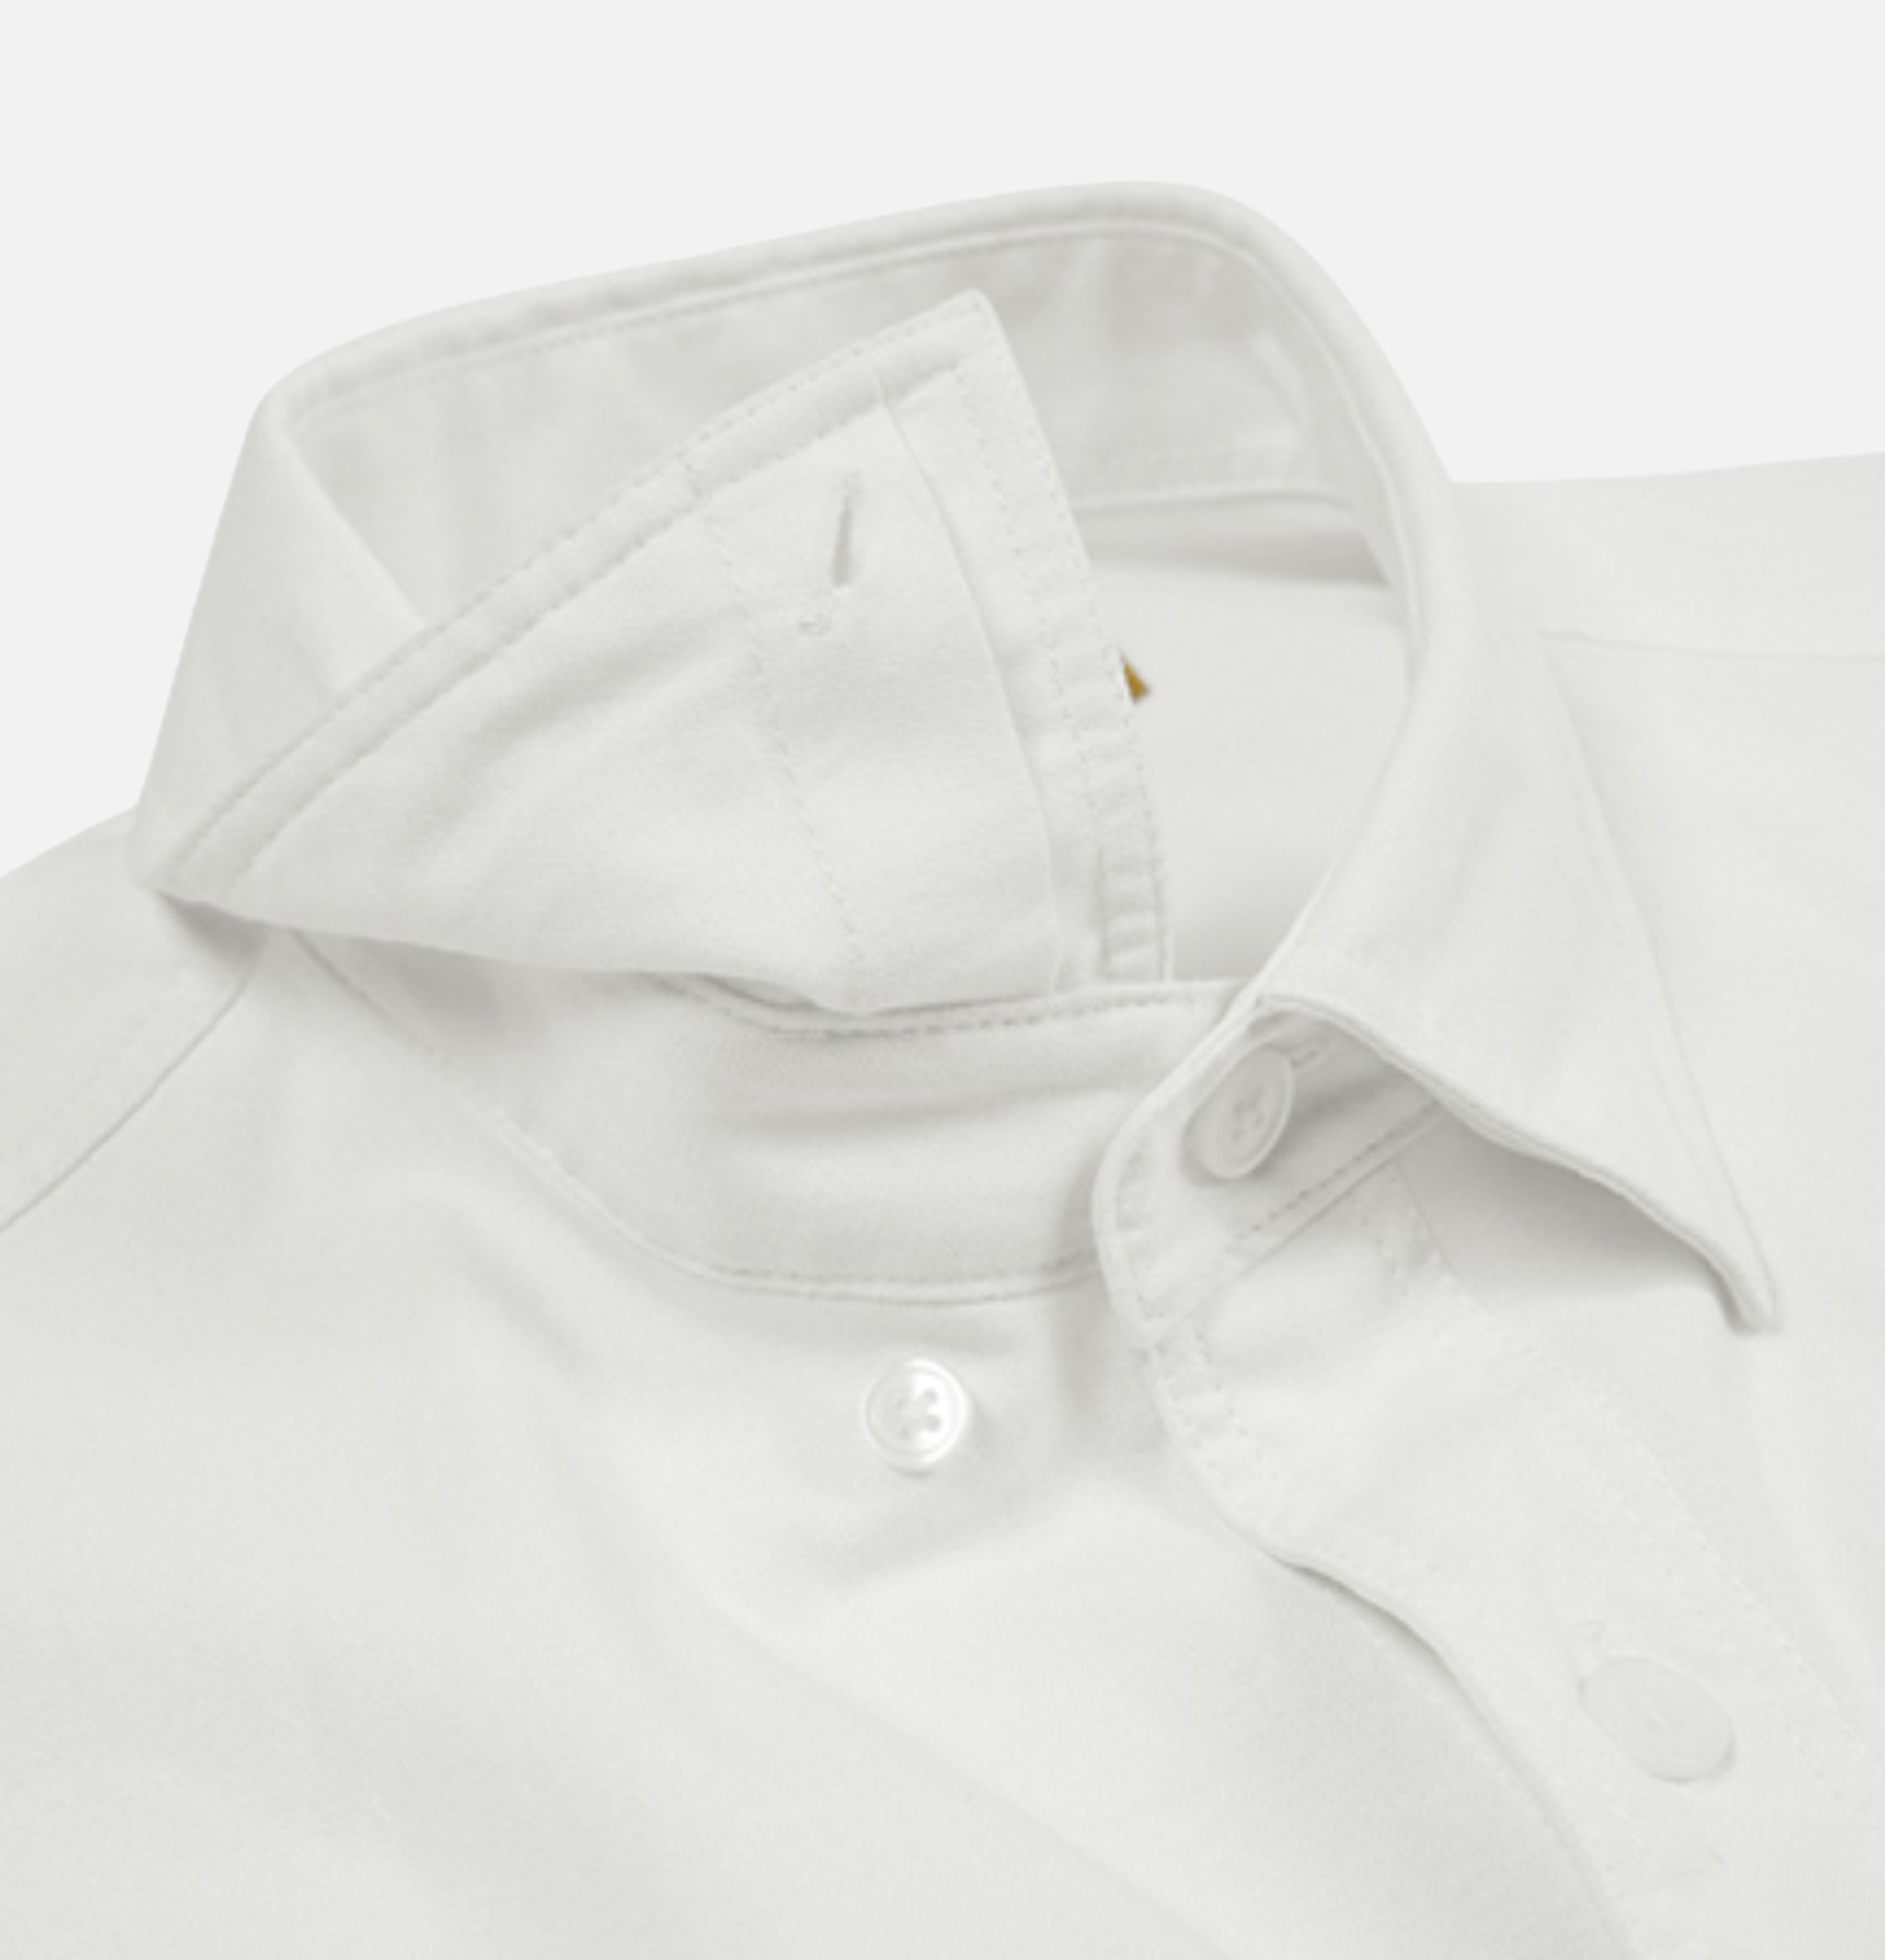 Chemise Frizmworks Oxford Oversize Shirt White